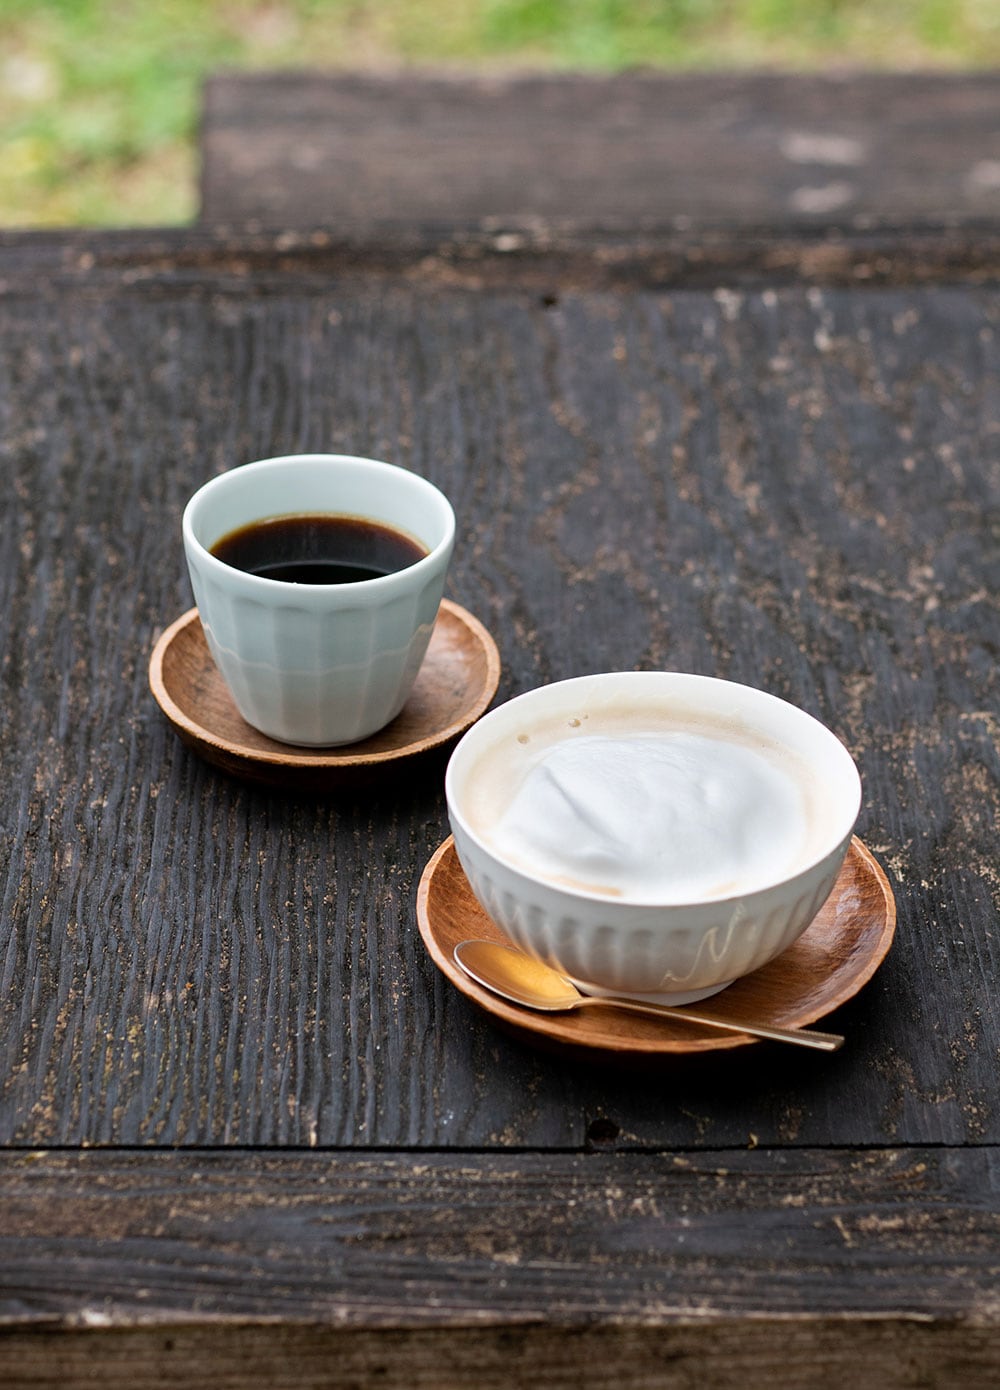 ハンドドリップコーヒーは、オーダーごとに豆を挽いて淹れてくれる。500円。ふわふわのフォームドミルクがたまらないカフェオレも人気。500円。